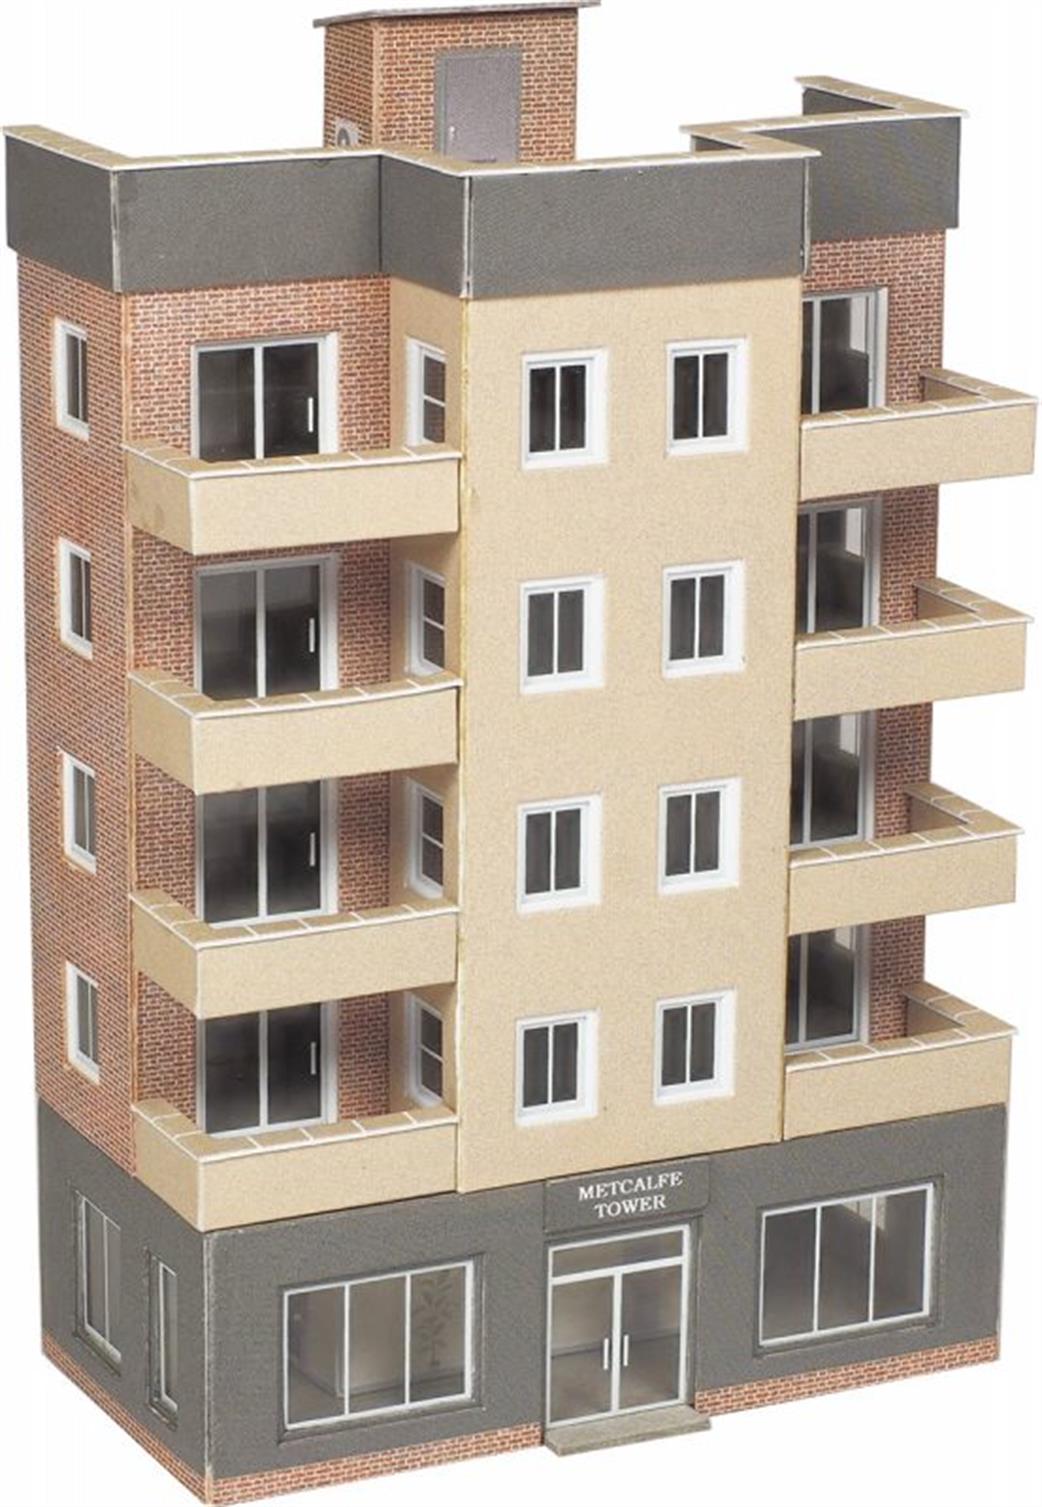 Metcalfe N PN960 Modern Tower Block Low Relief Building Card Kit